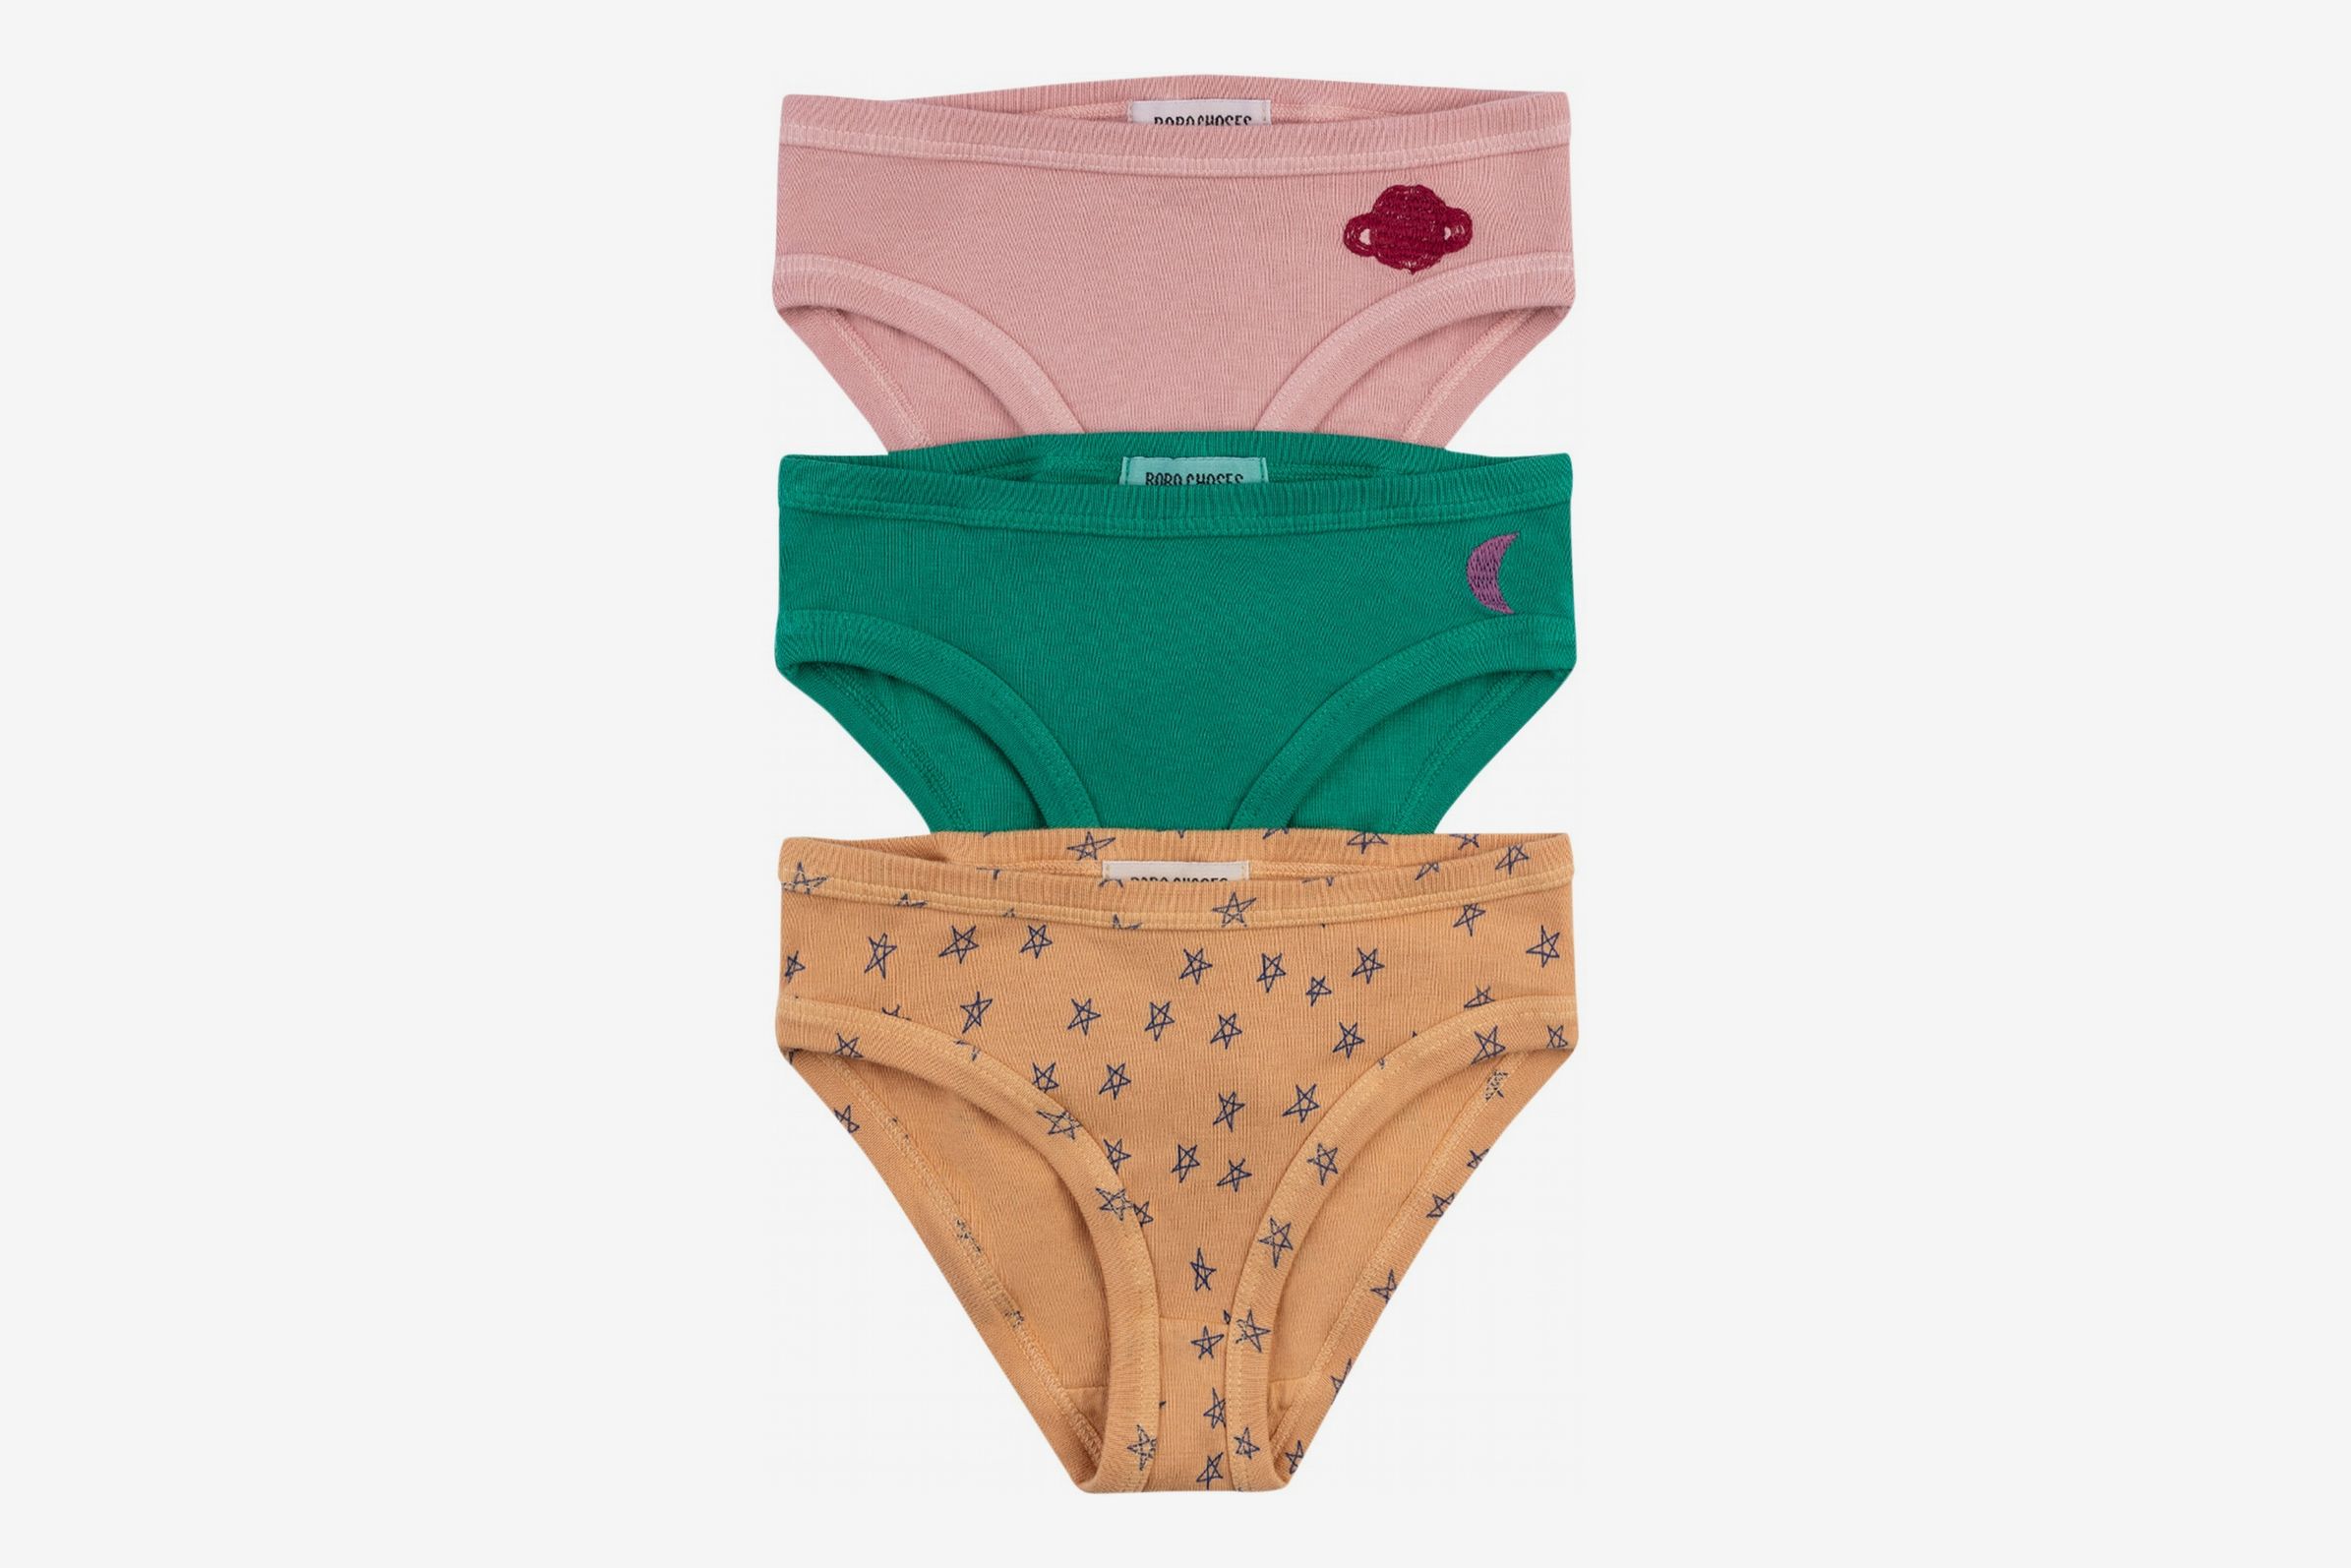 Zegoo Girls Underwear Boyshorts 100% Cotton Childrens Panties 3 Pack 